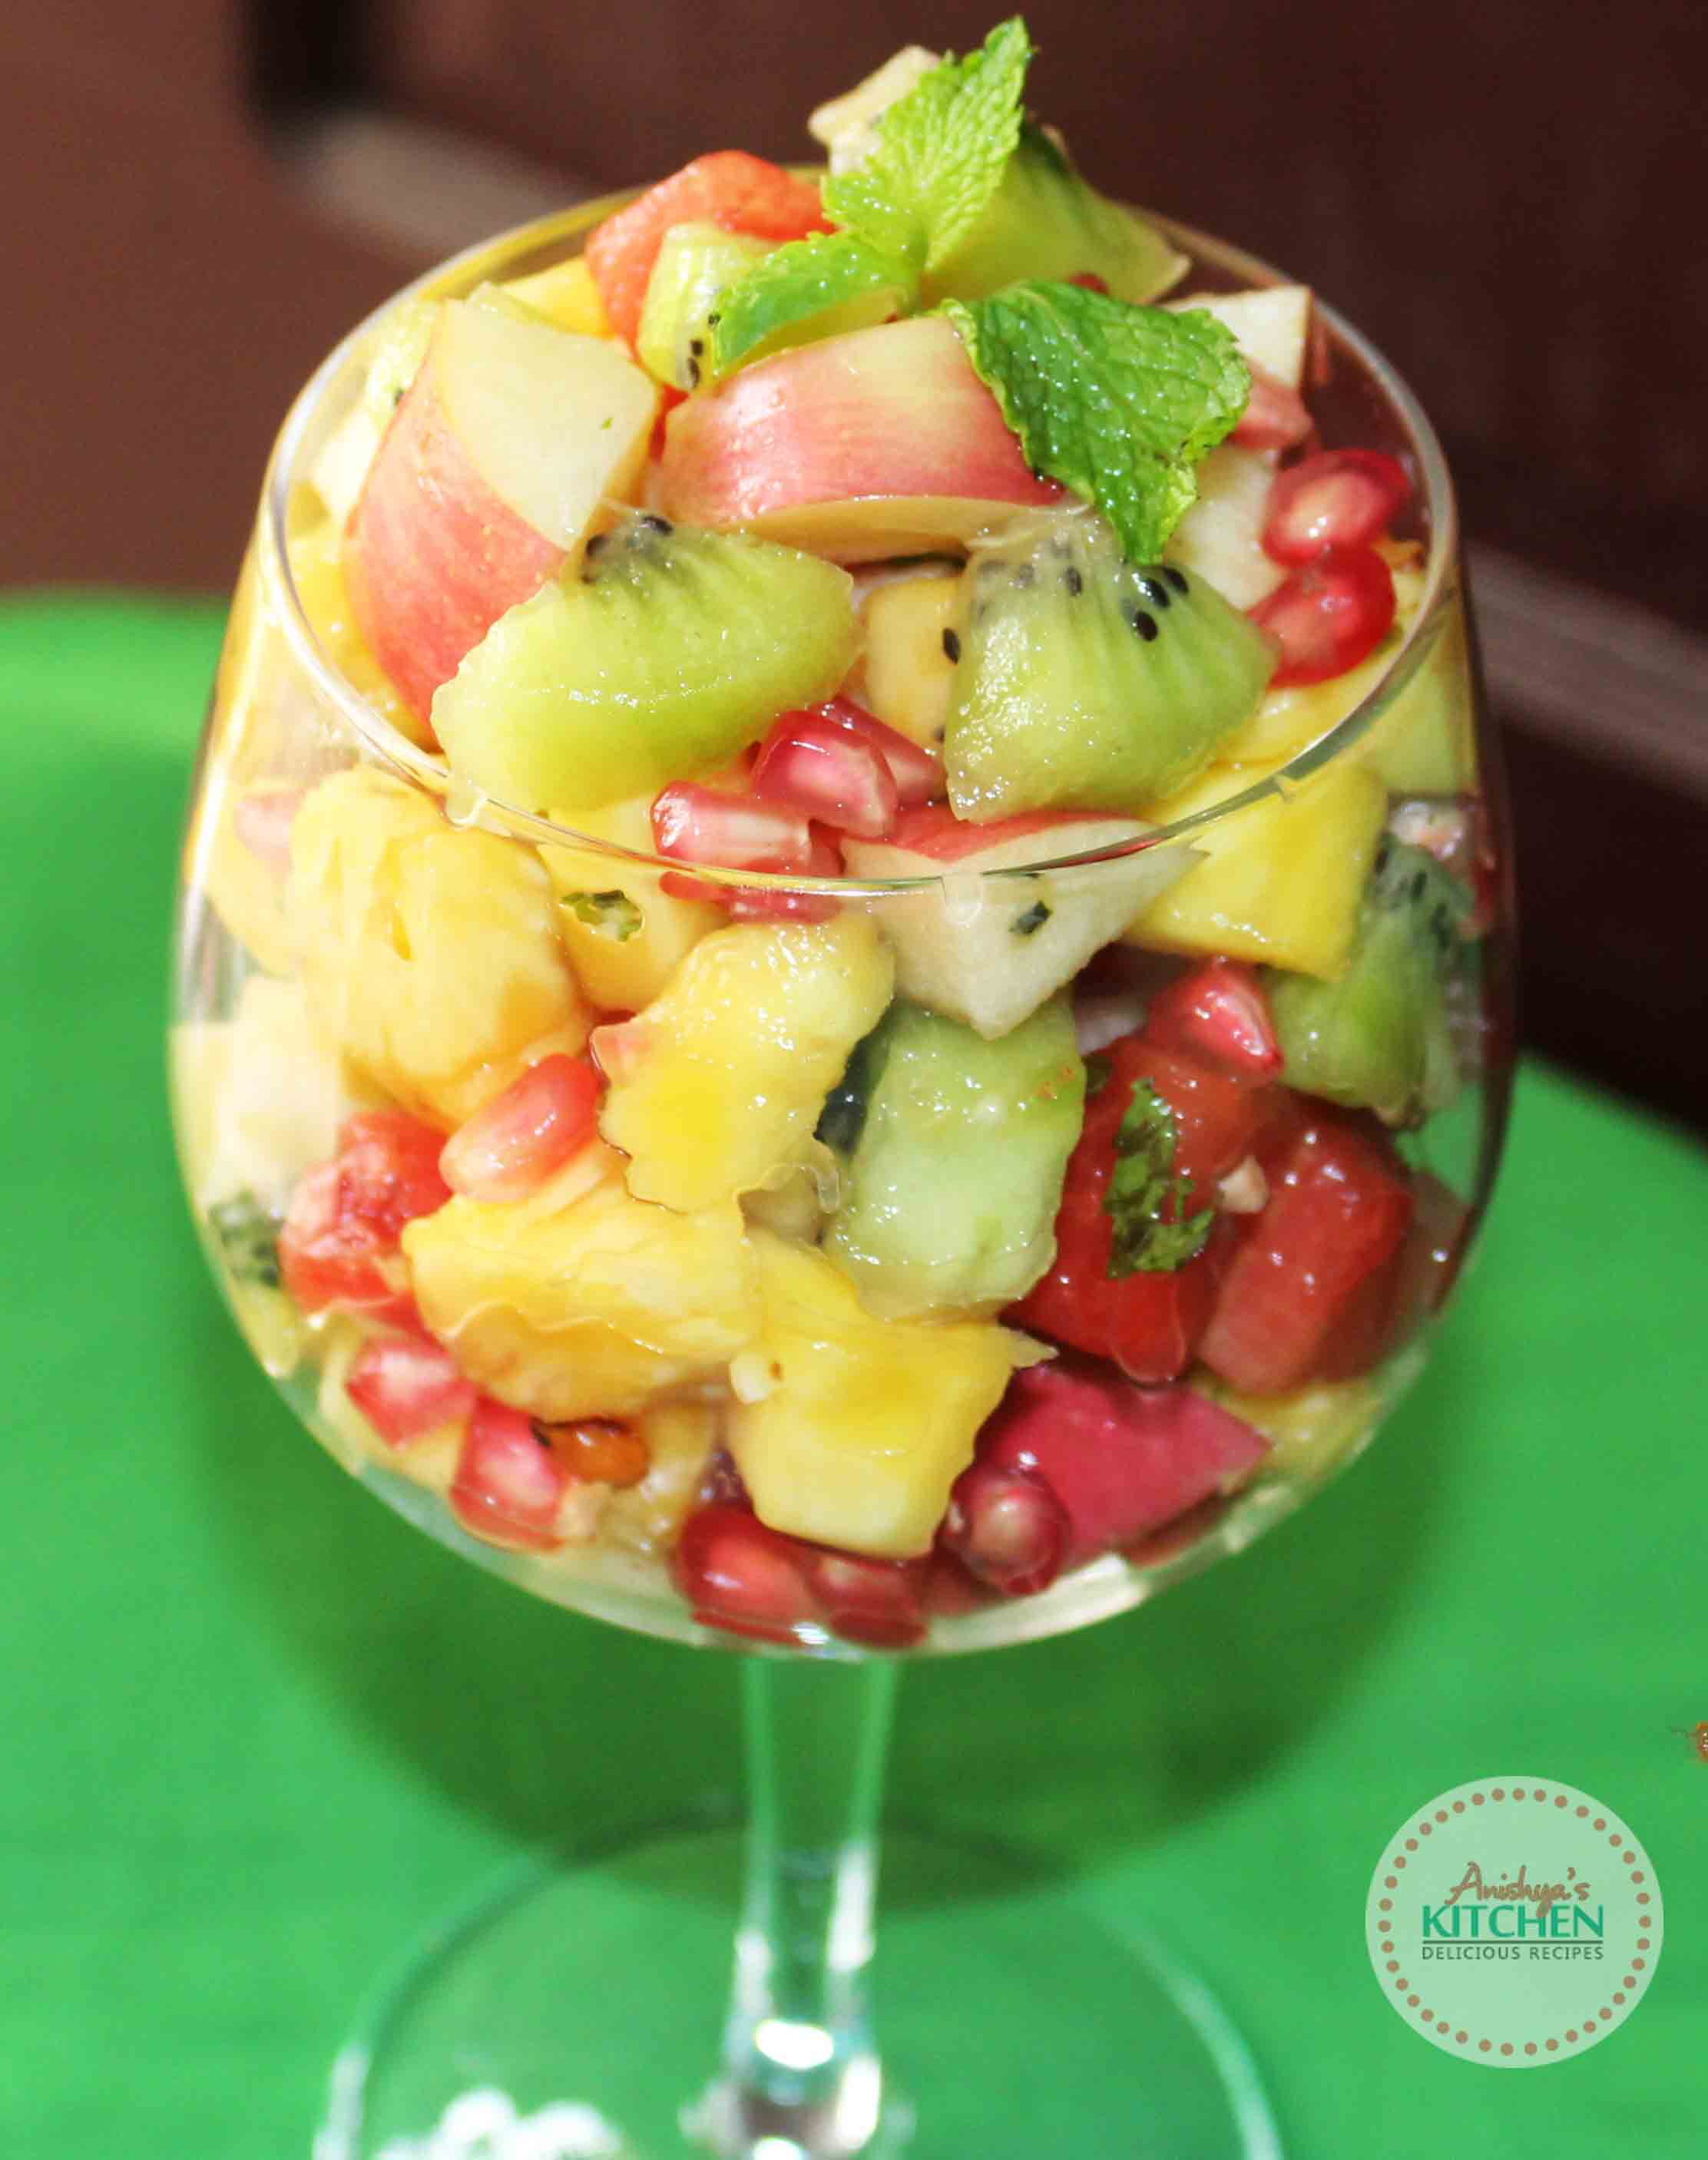 Mixed Fruit Salad